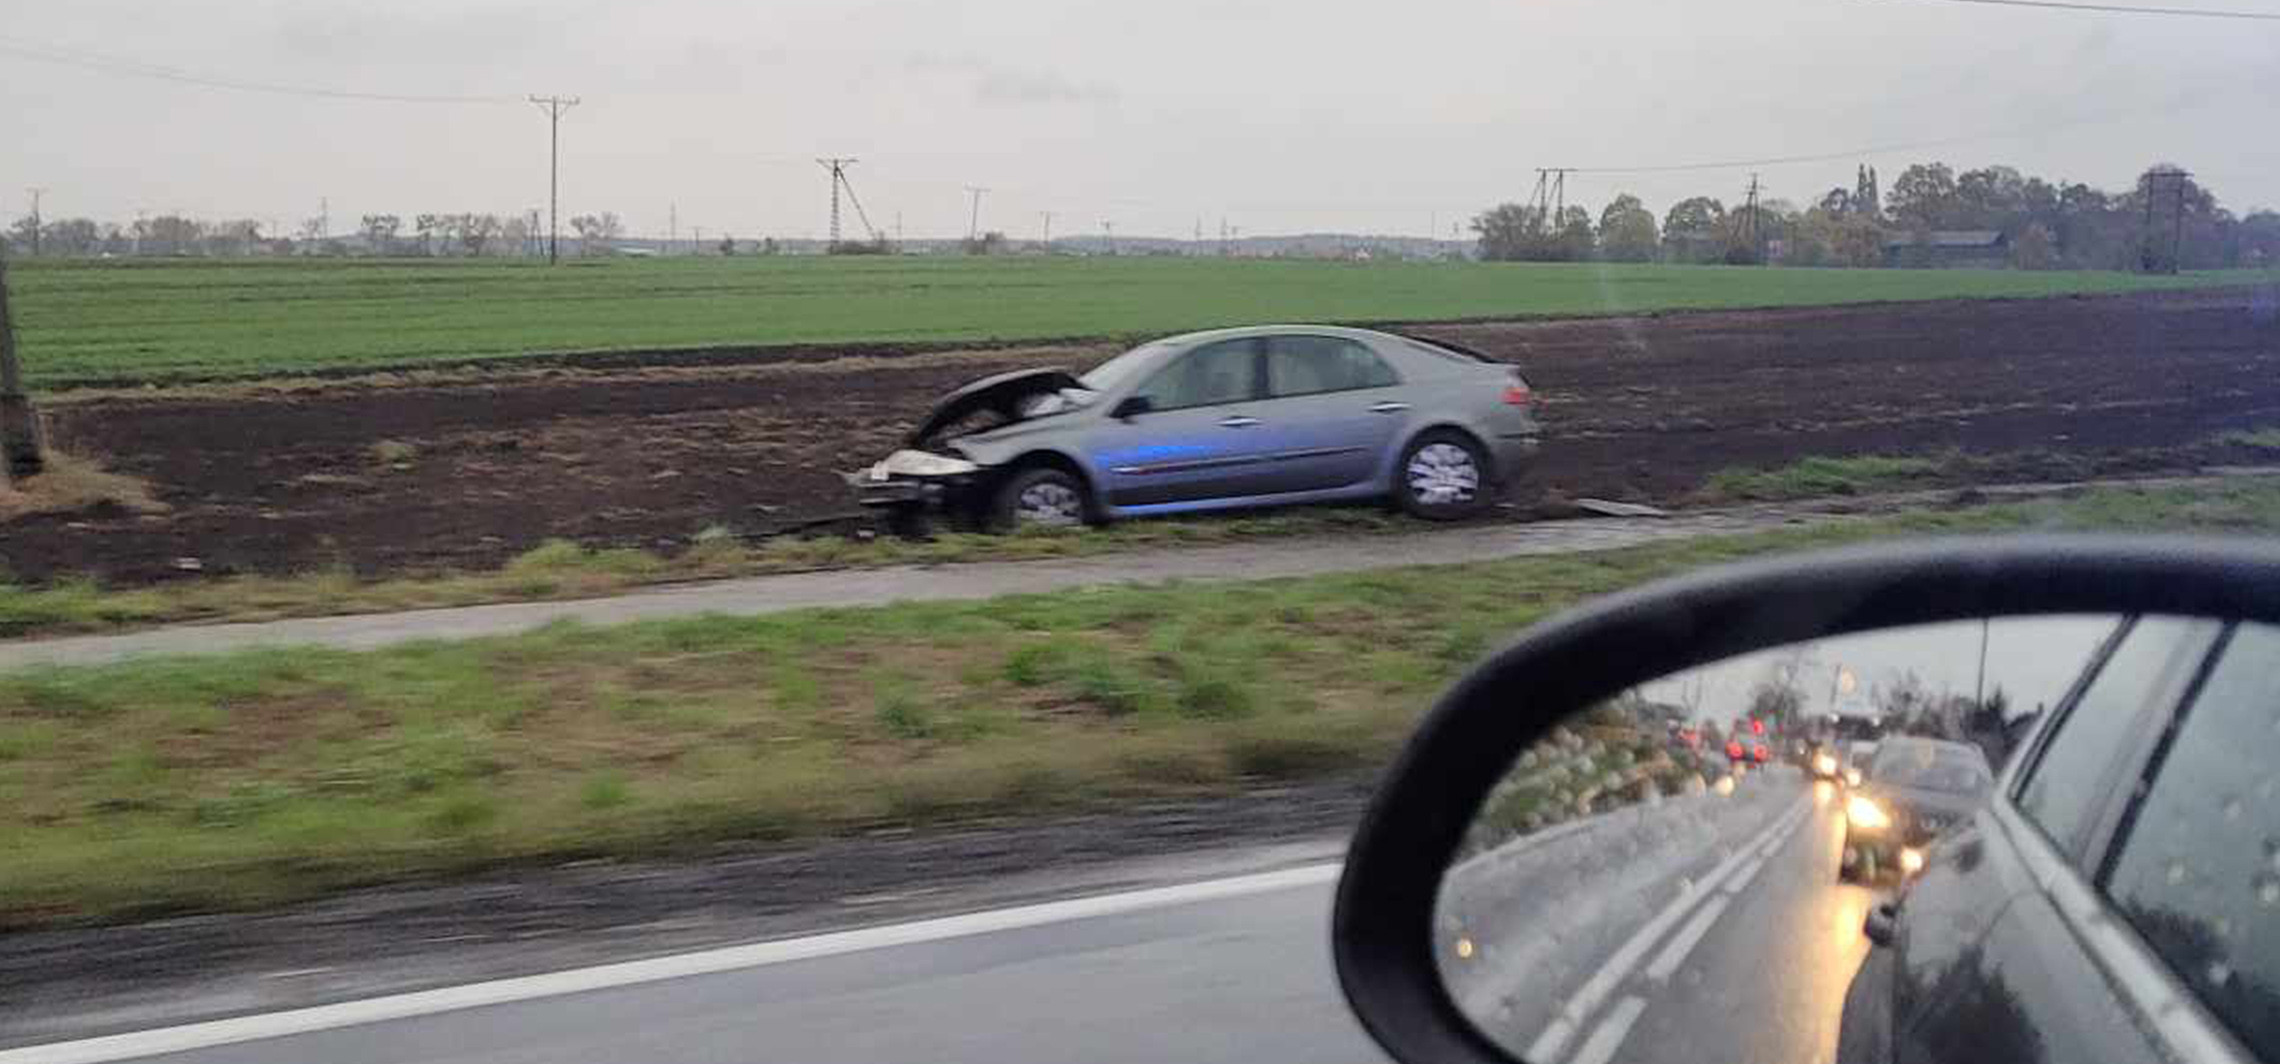 Gniewkowo - Samochód osobowy zderzył się z pojazdem wojskowym